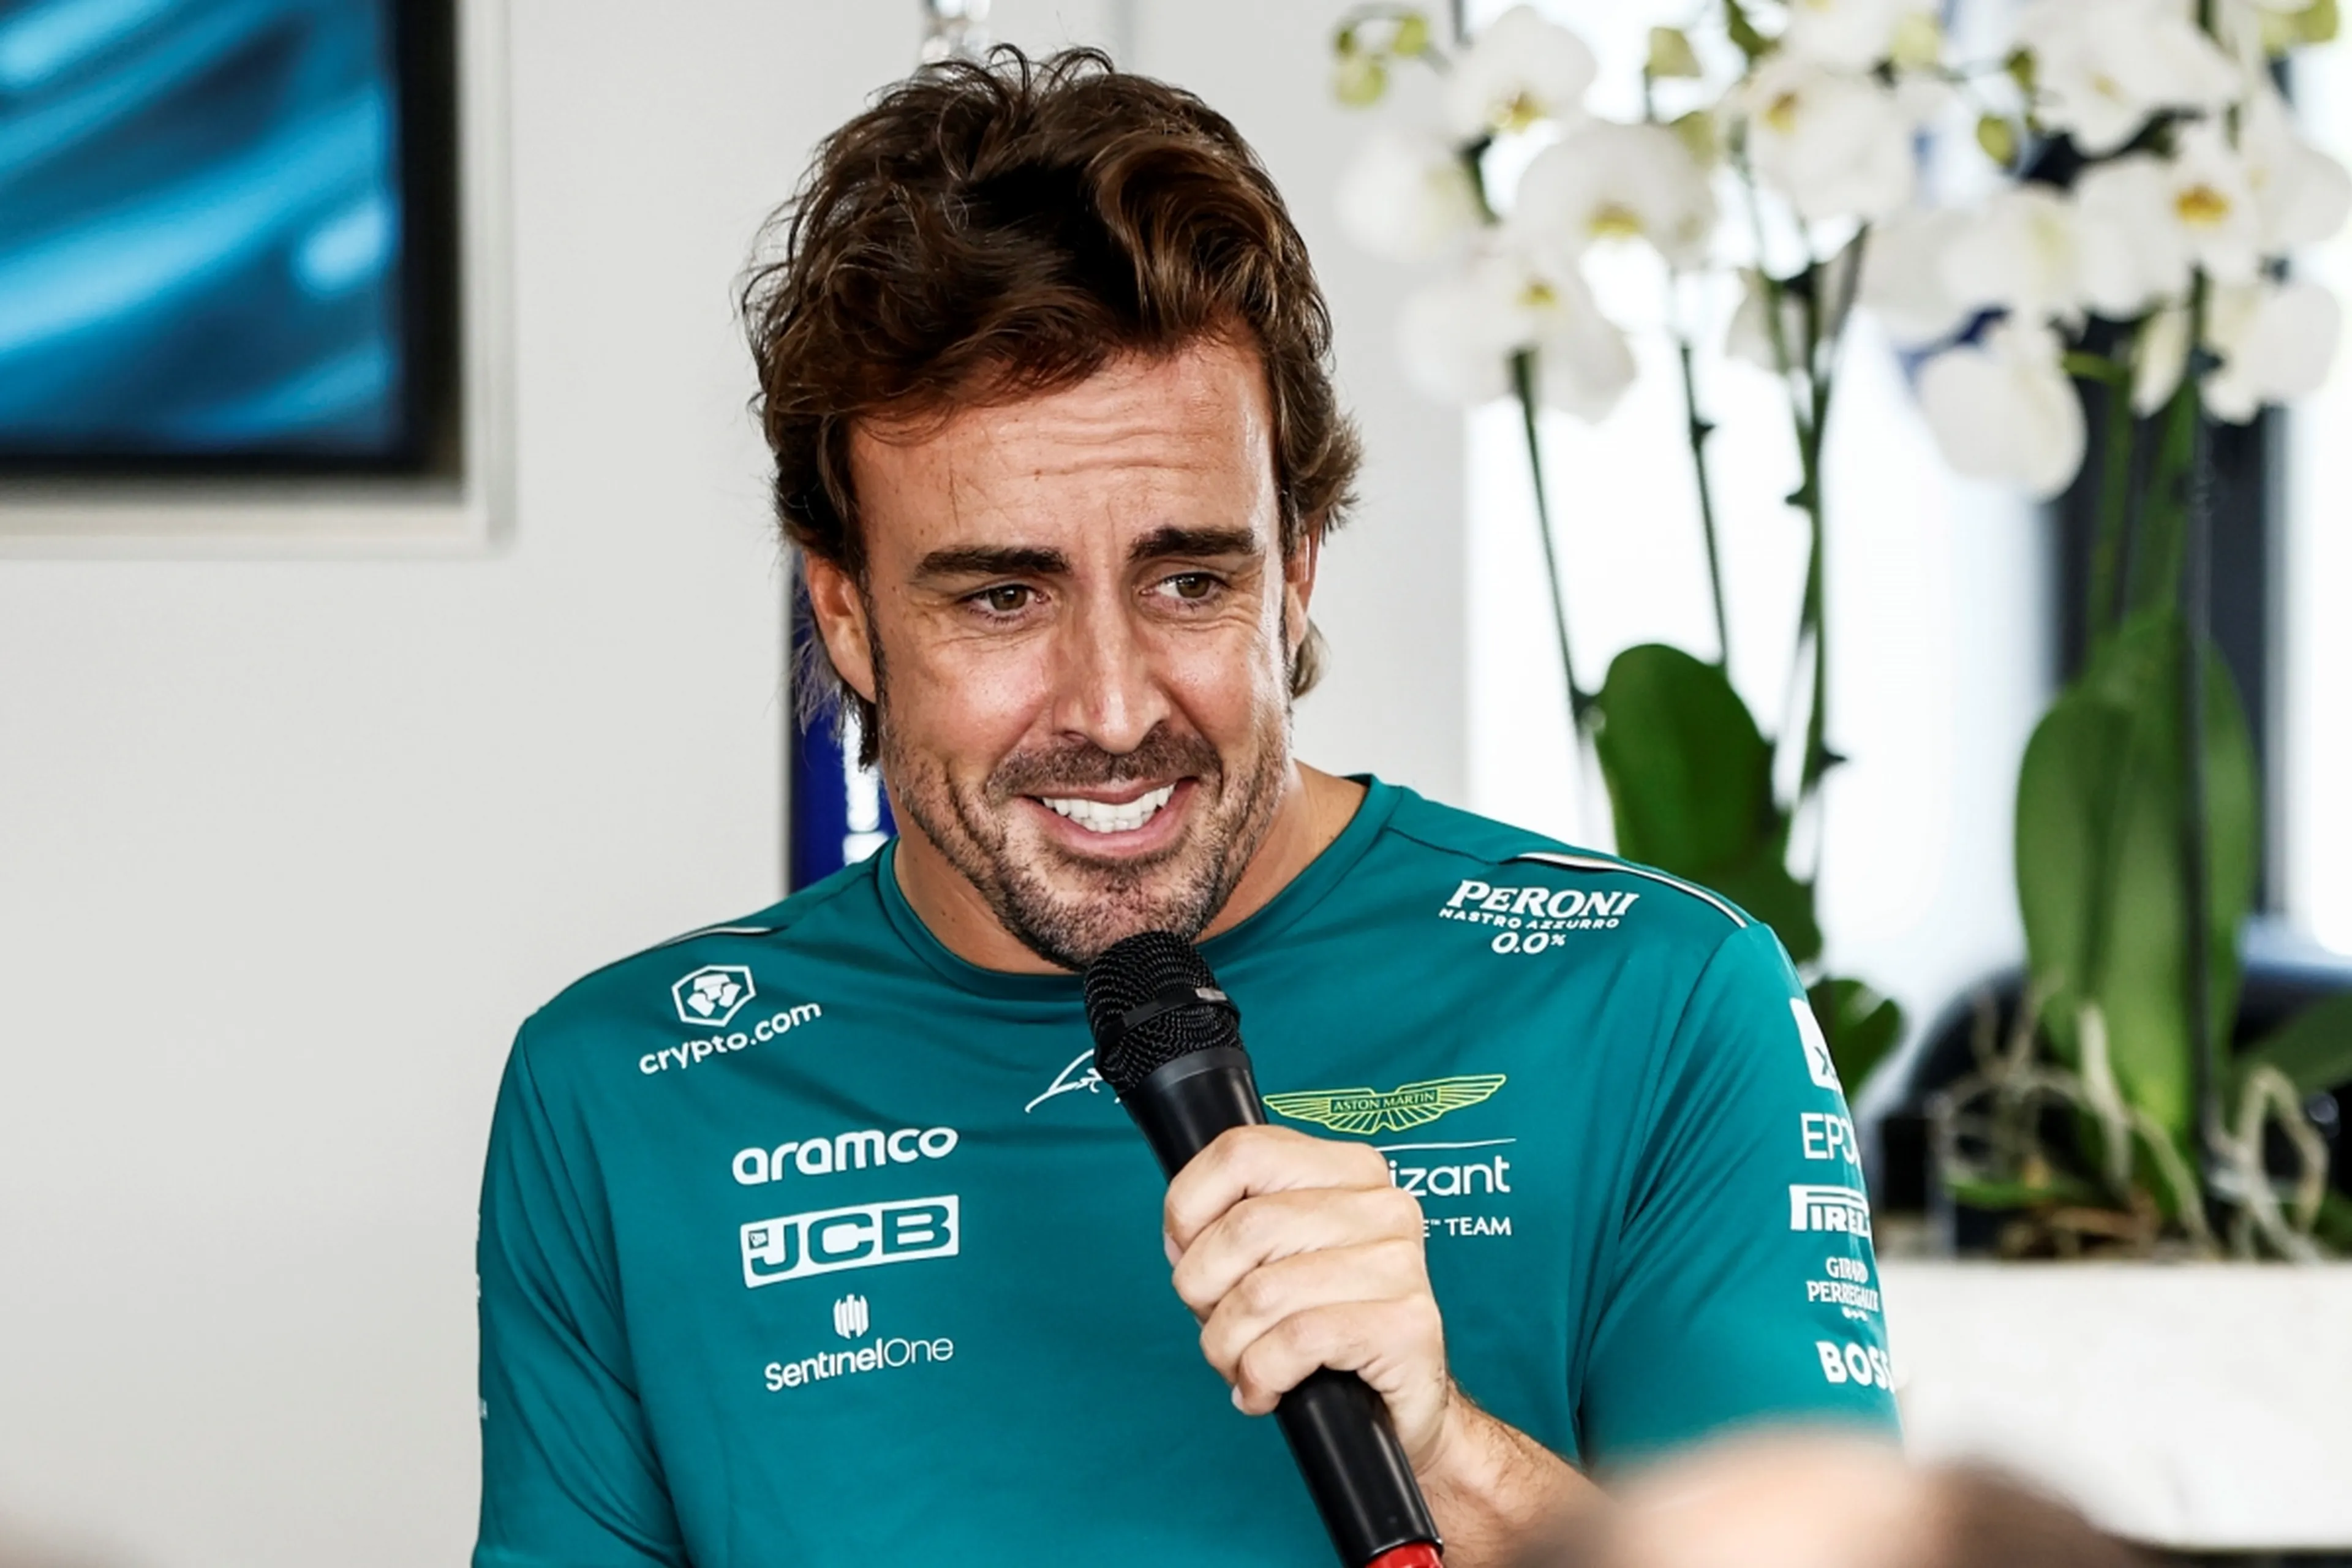 Fórmula Directa on X: 👑 Los Reyes ya han llegado. ¡@RealGalactic2 es el  GANADOR del SpeedPop de Fernando Alonso!  📩 Ponte  en contacto con nosotros vía MD para gestionar el envío.